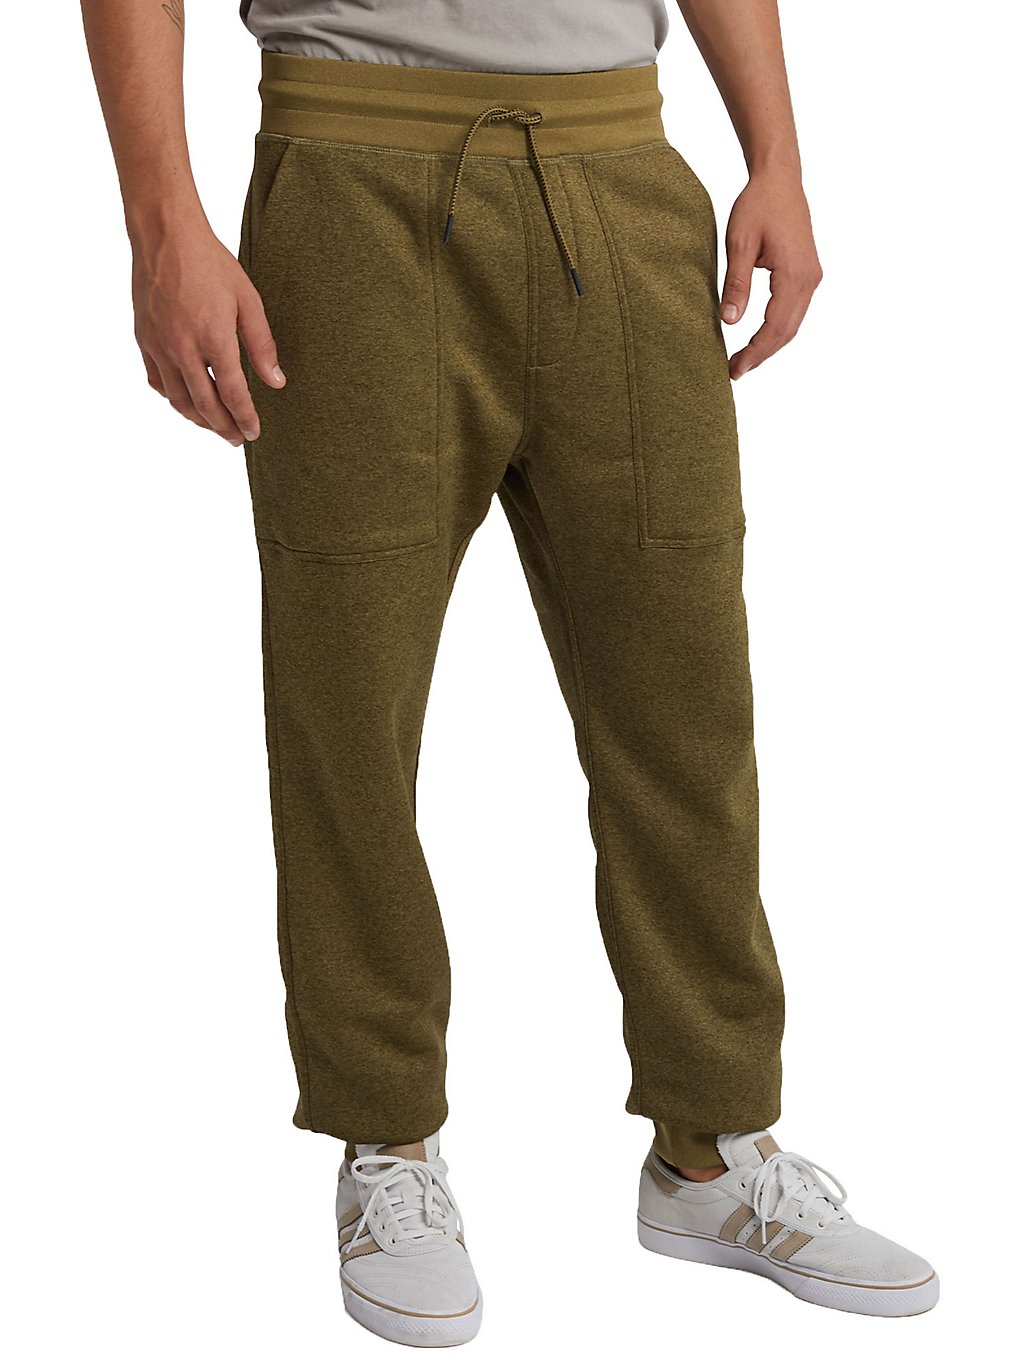 Burton oak jogging pants vihreä, burton